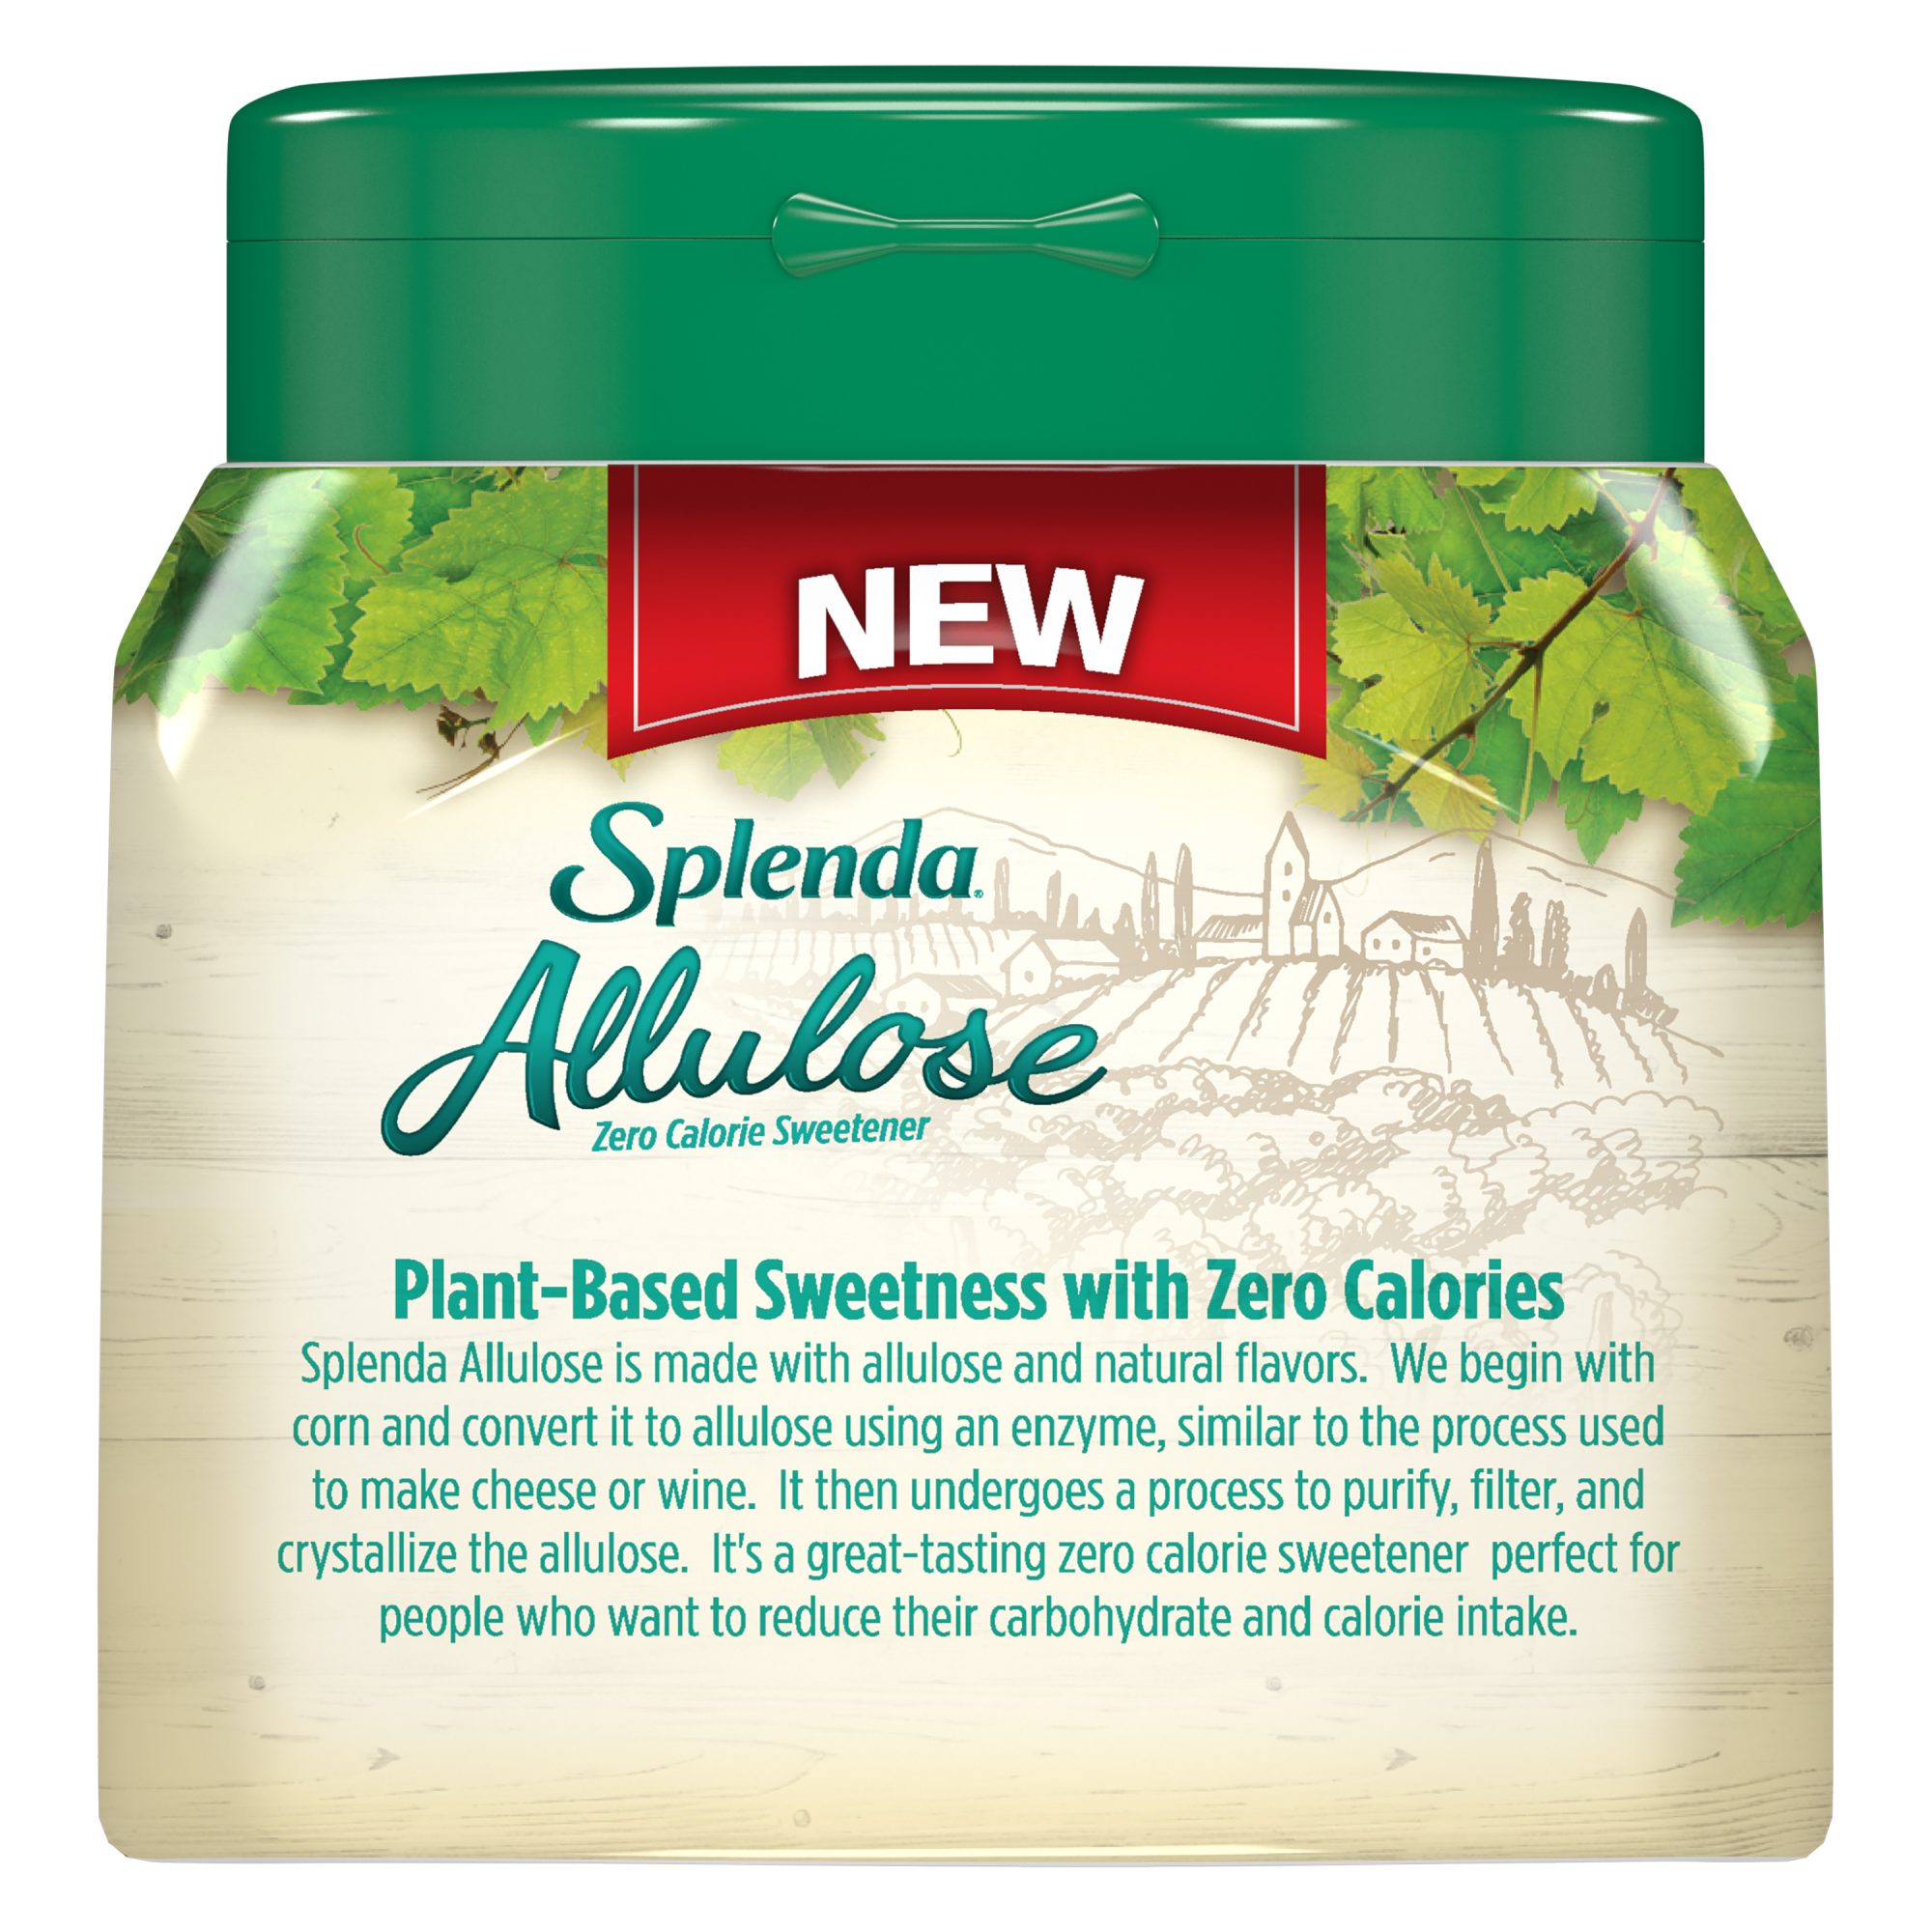 Splenda® Allulose Sweetener, 9.8 oz Jar